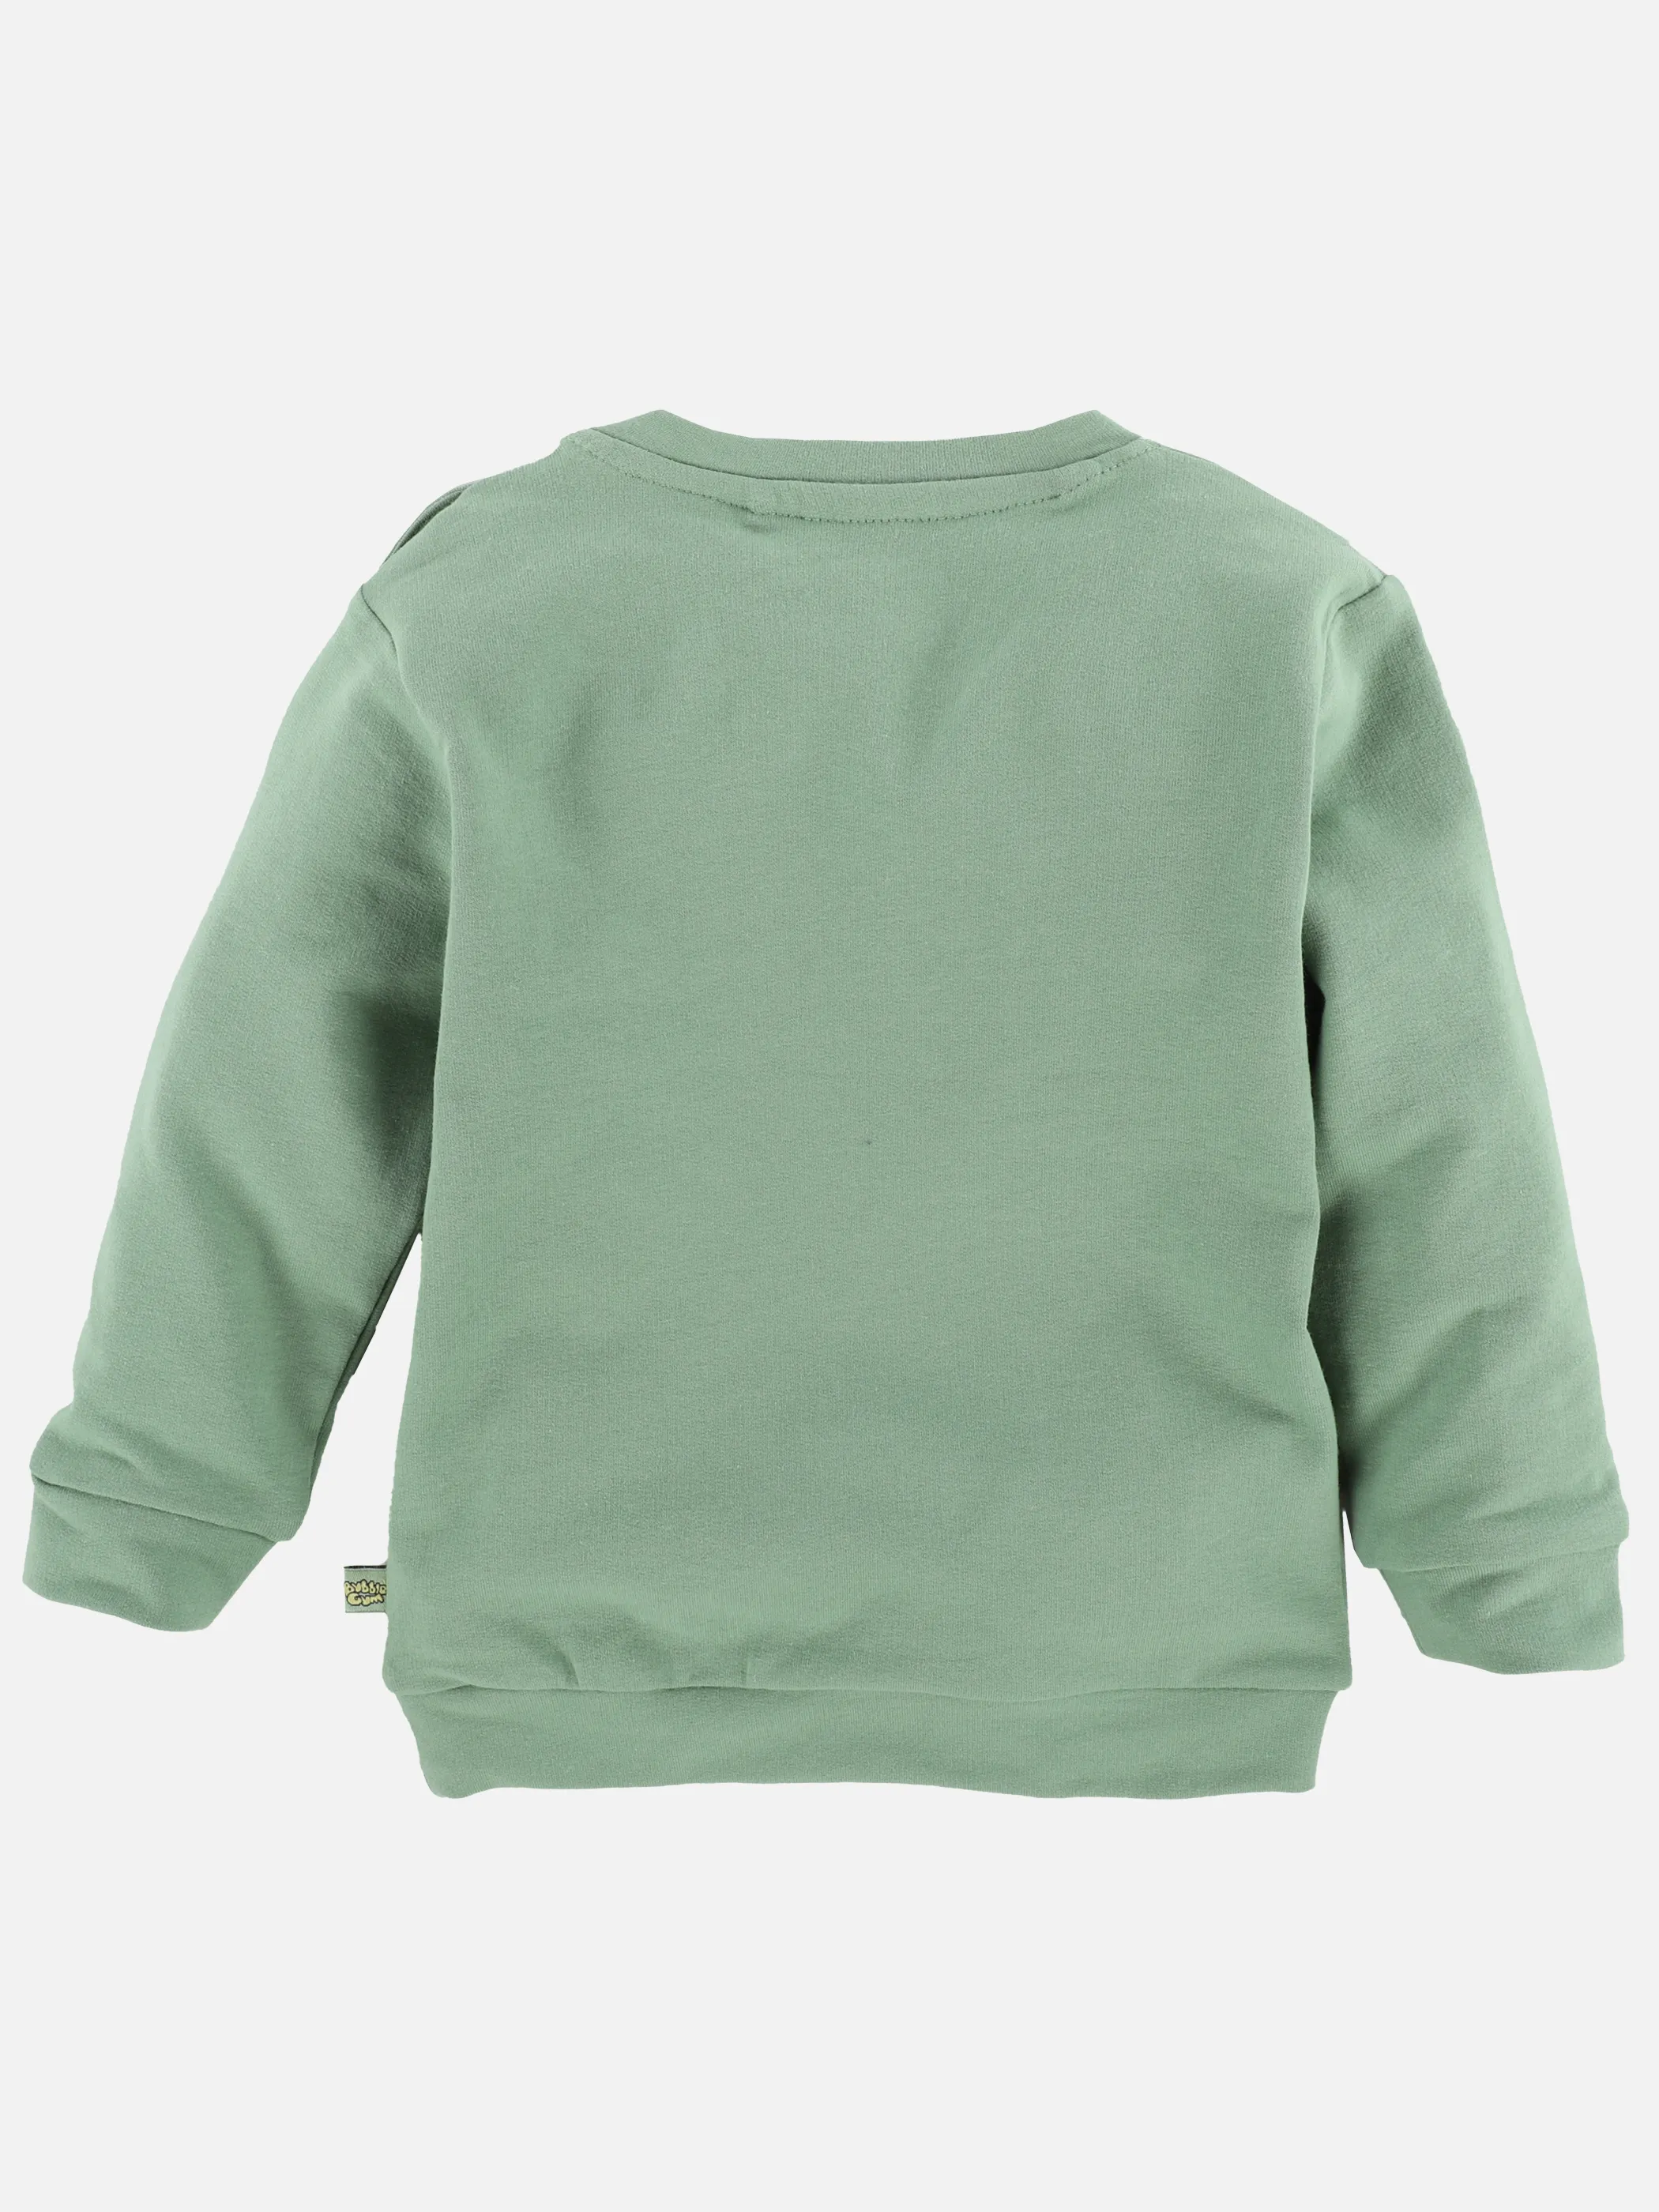 Bubble Gum BJ Sweatshirt mit Print und Applikationen in grün Grün 889933 GRÜN 2